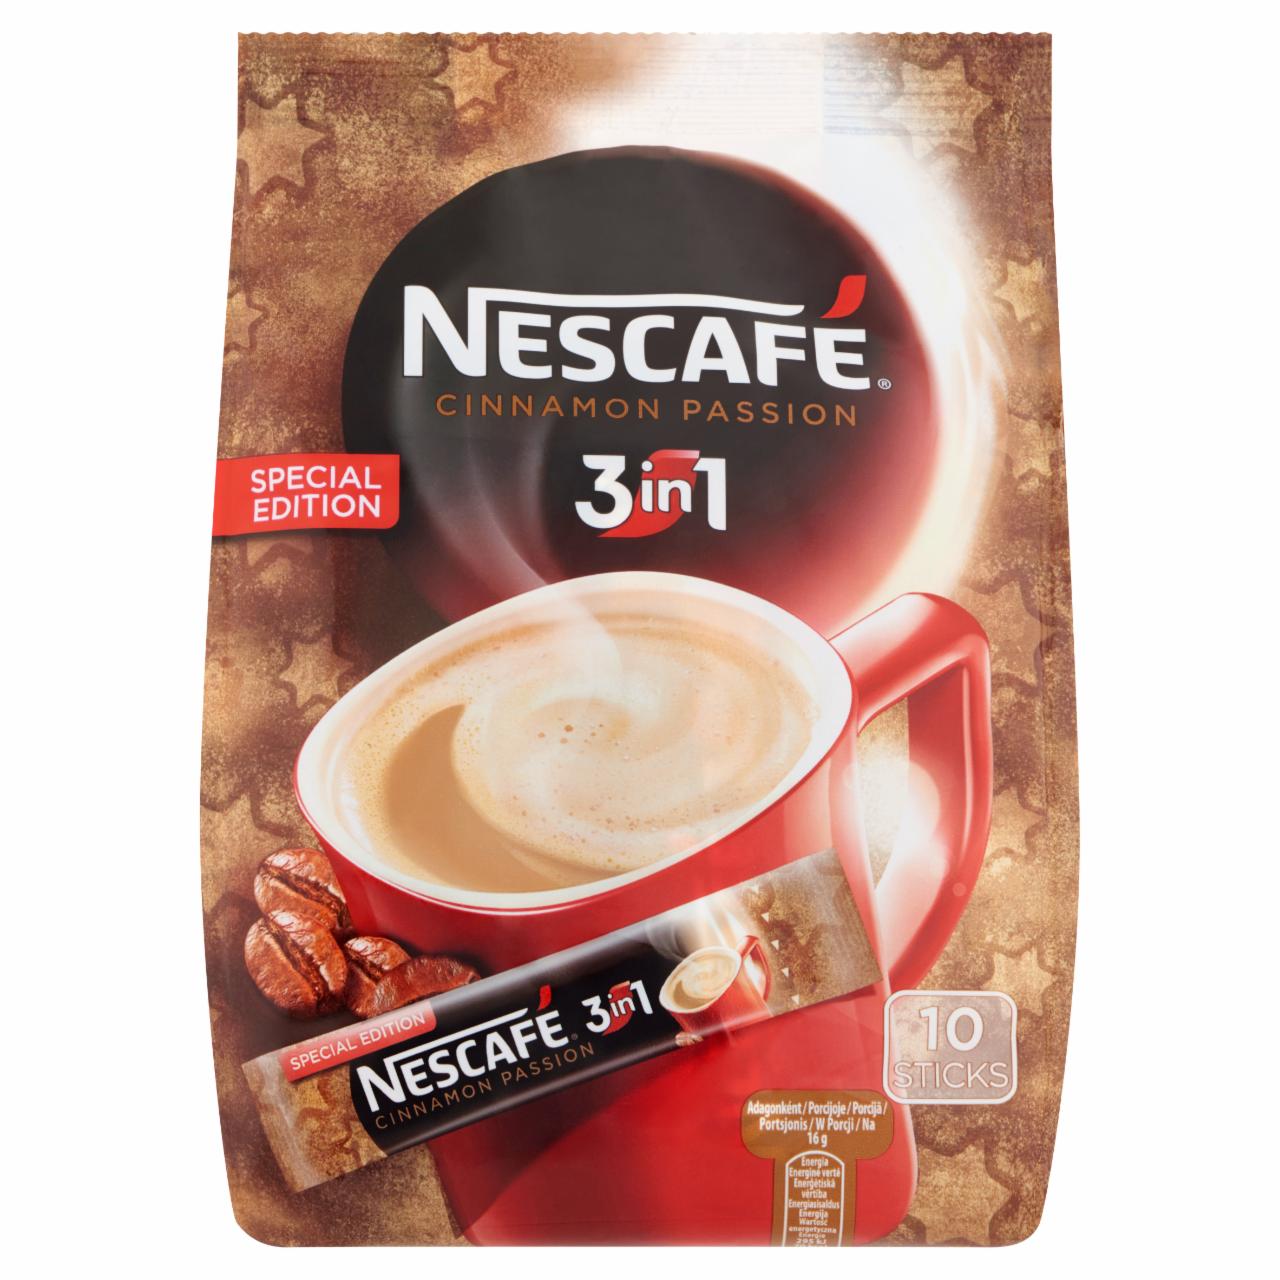 Képek - Nescafé 3in1 Cinnamon Passion azonnal oldódó kávéspecialitás fahéjjal 10 db 160 g